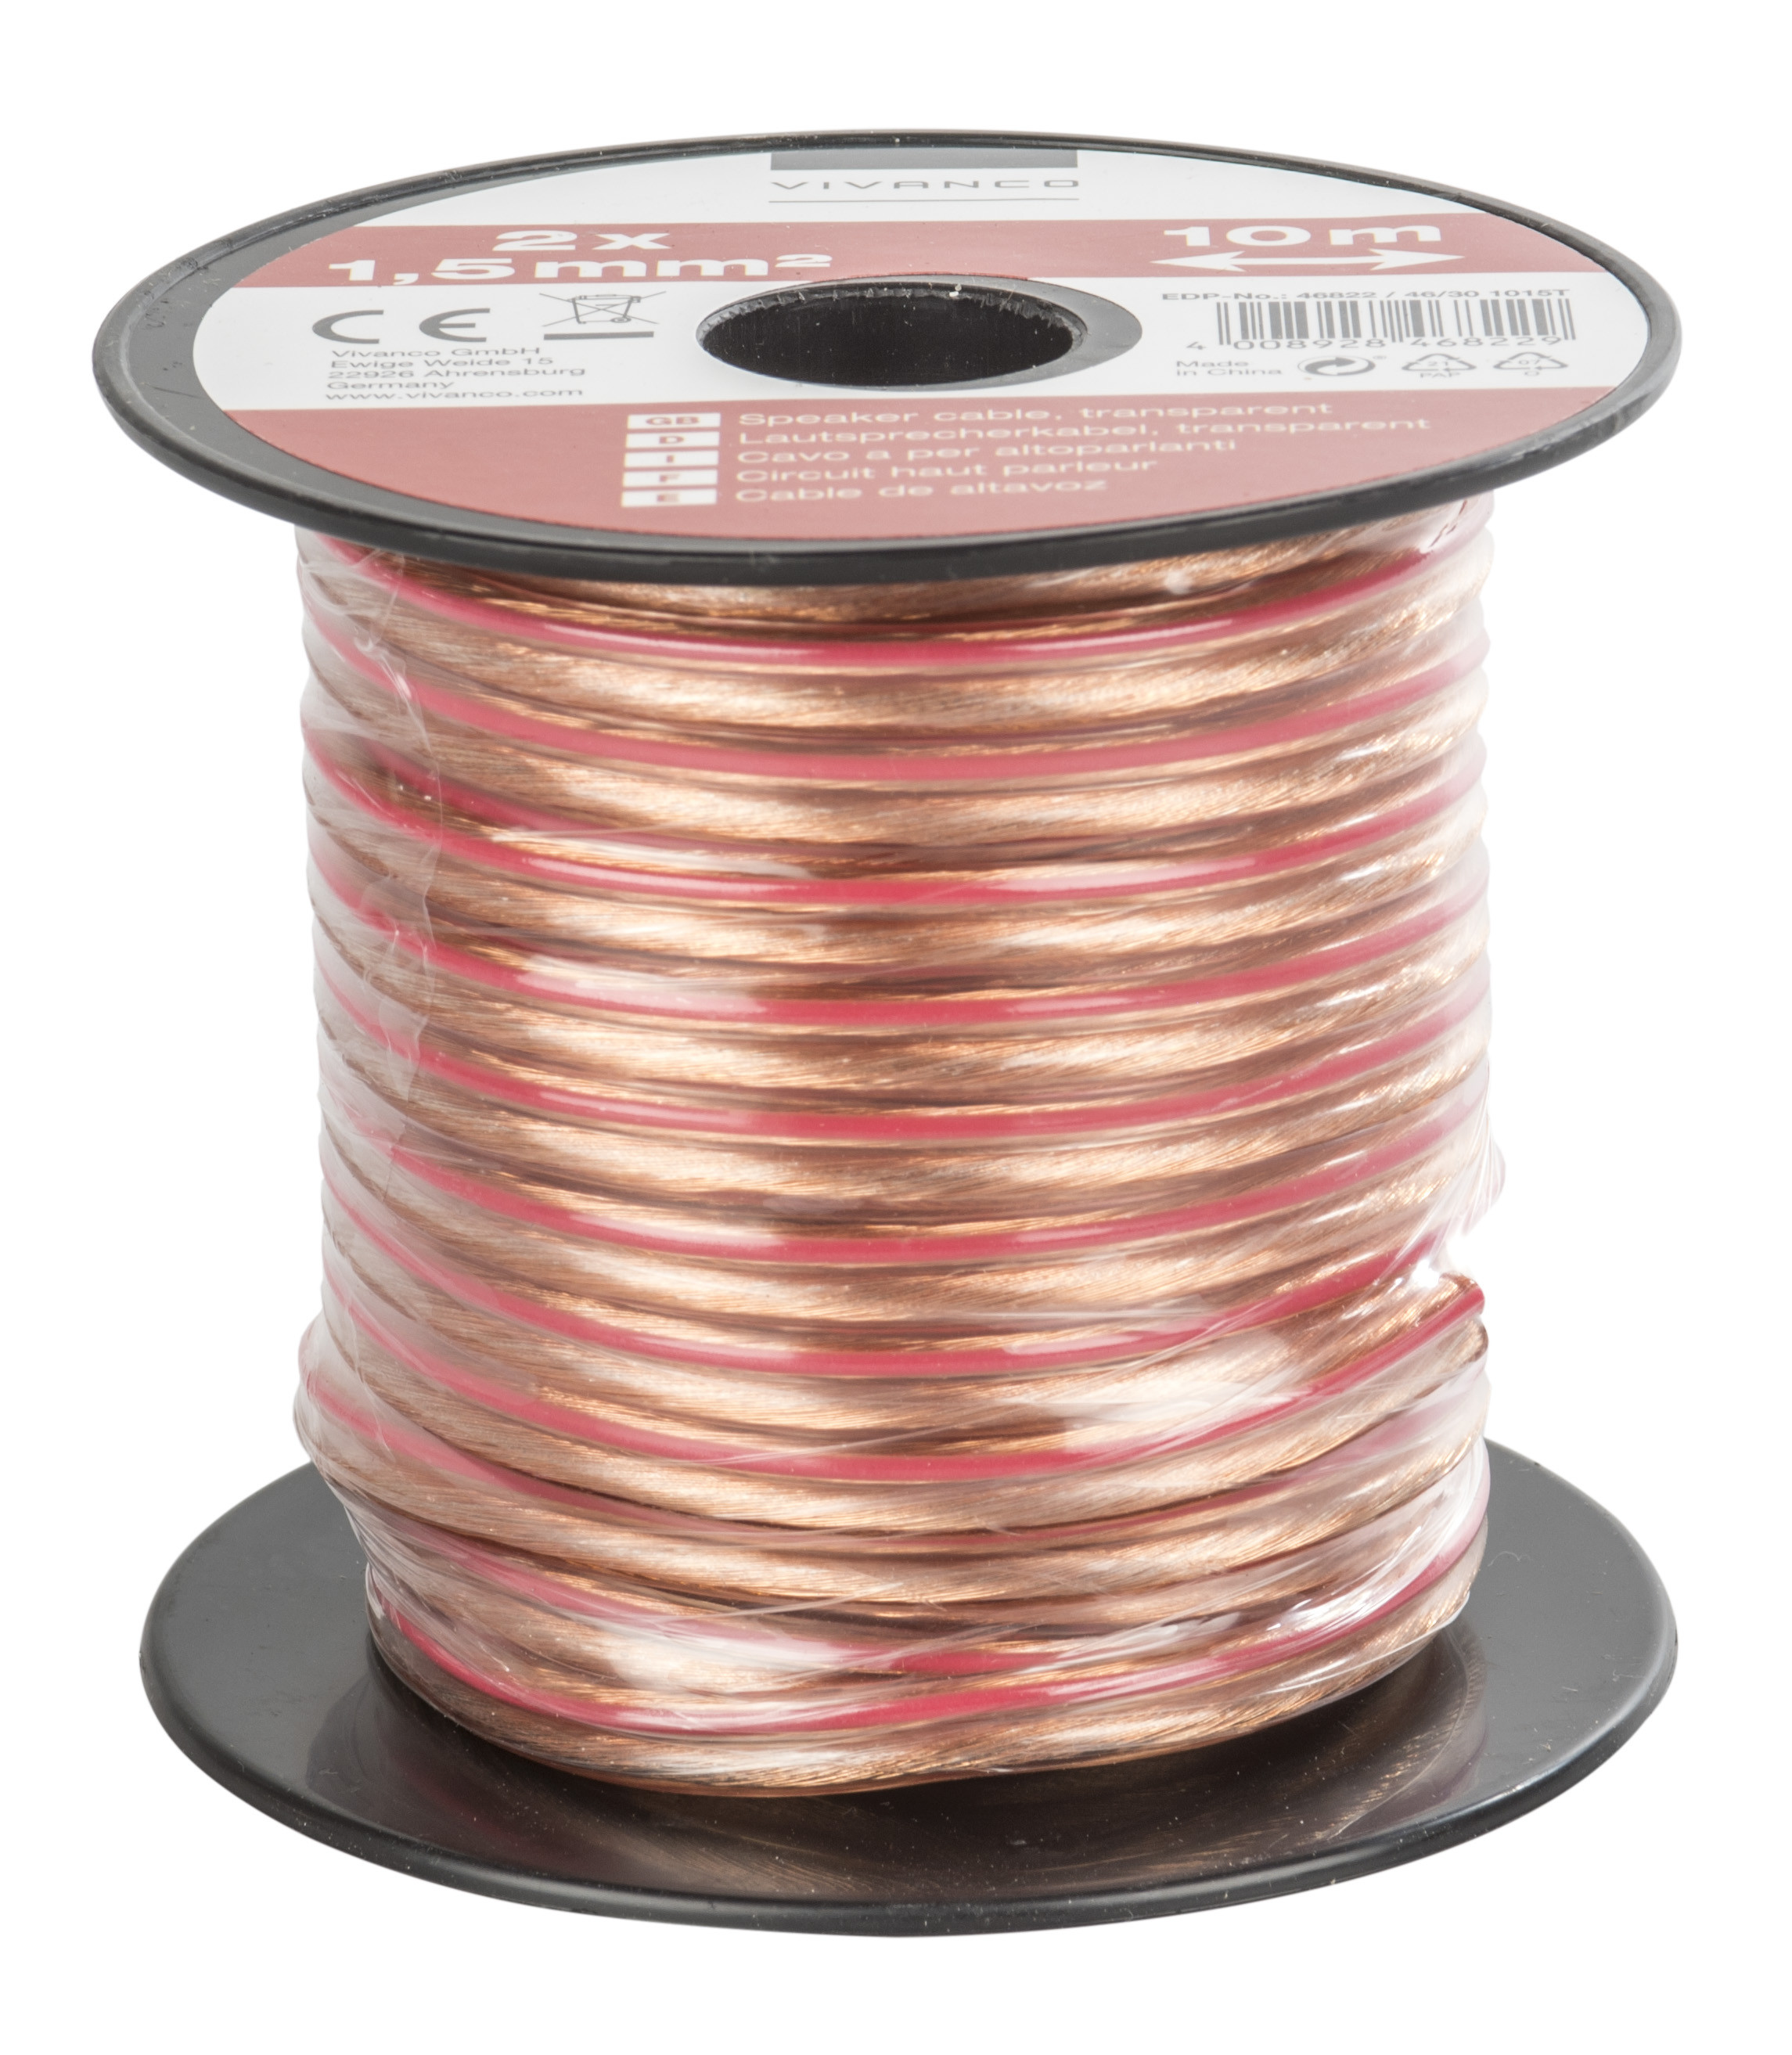 Vivanco 46822 audio cable 10 m Copper, Transparent 4008928468229 kabelis video, audio